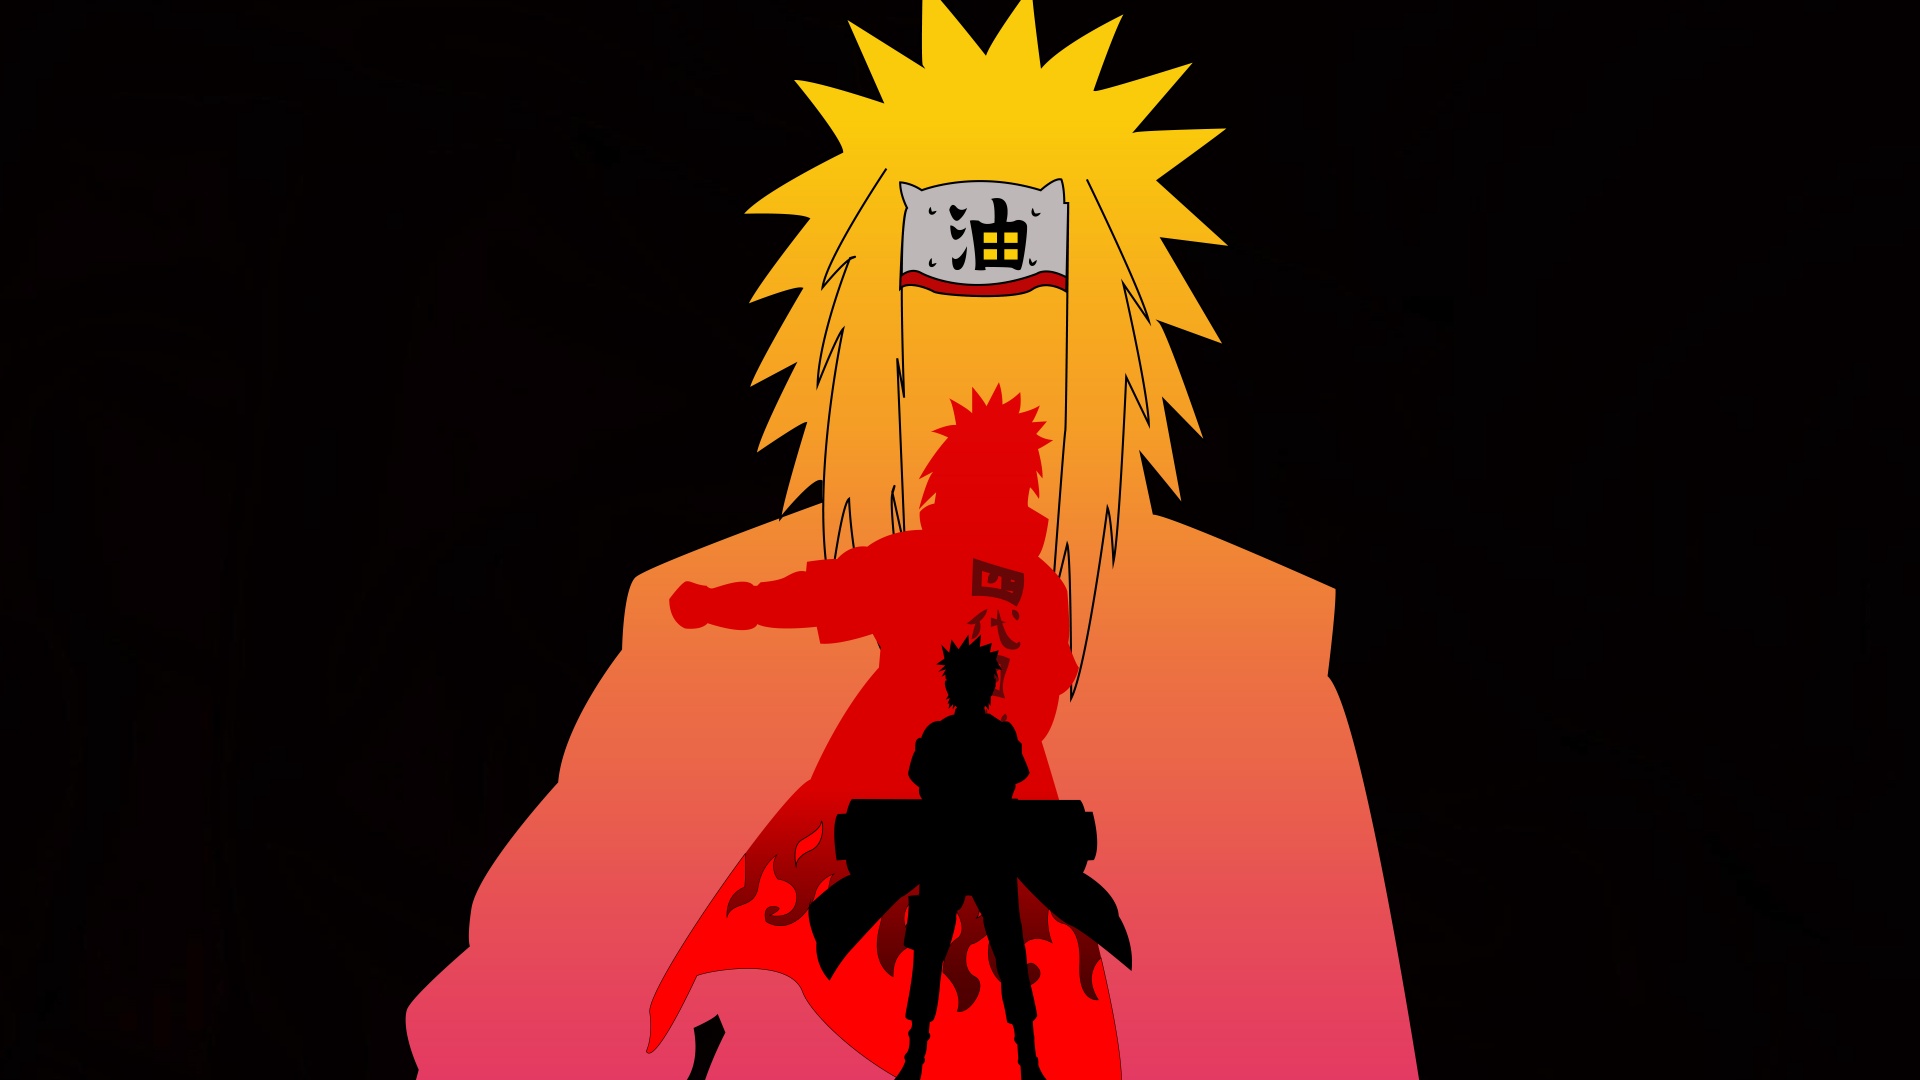 Hãy chiêm ngưỡng hành trình của Naruto Uzumaki, nhân vật anh hùng mạnh mẽ và đầy tình yêu thương trong thế giới Naruto. Ảnh liên quan đến Naruto chính là cuộc phiêu lưu tuyệt vời mà bạn không nên bỏ lỡ!